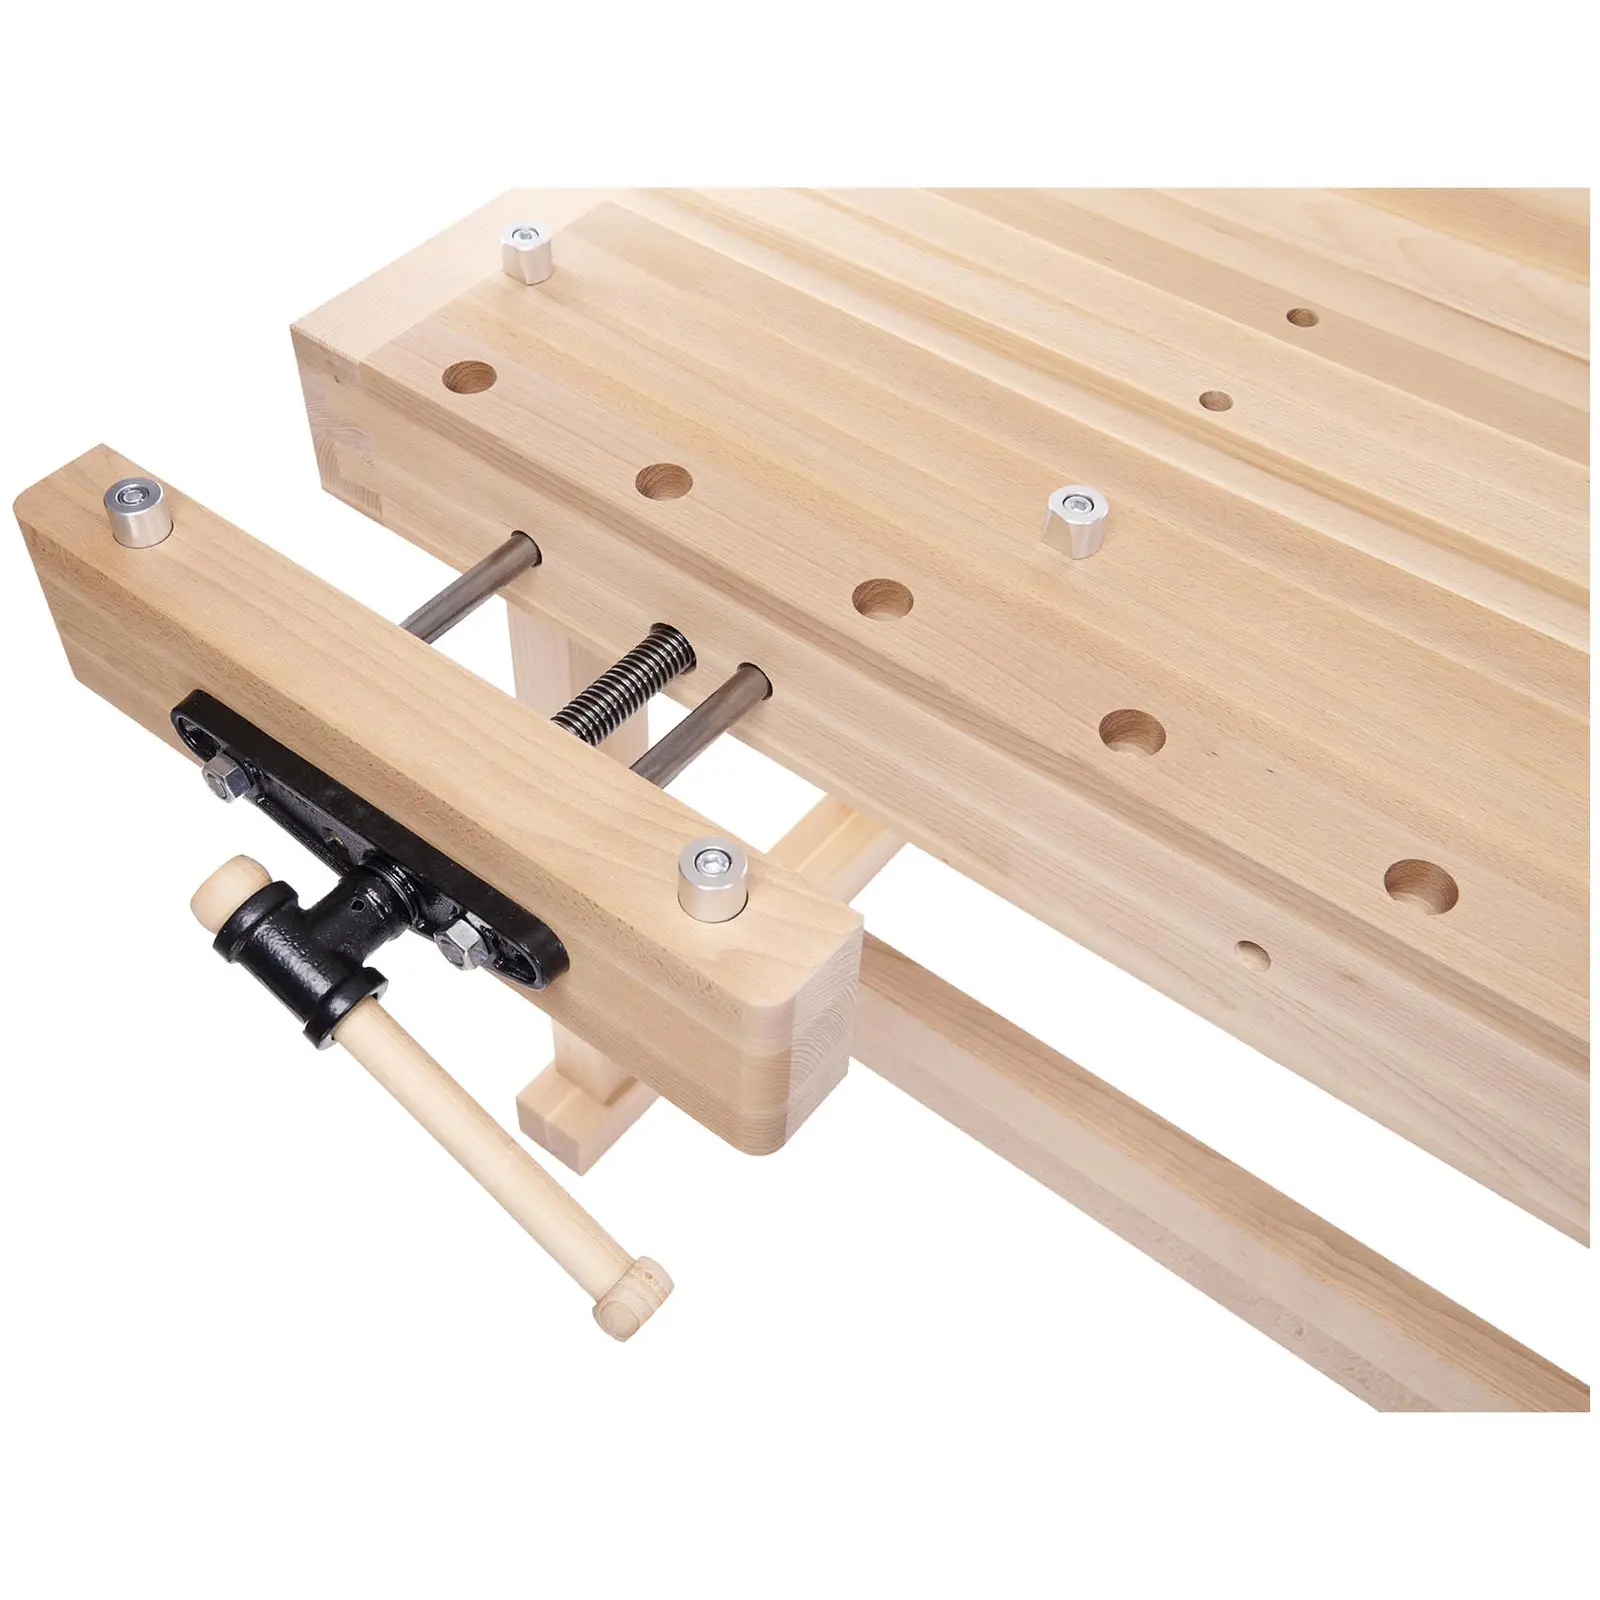 Mesa de carpintaria - madeira de faia - 2 tornos - tampo da mesa 1910 x 620 mm